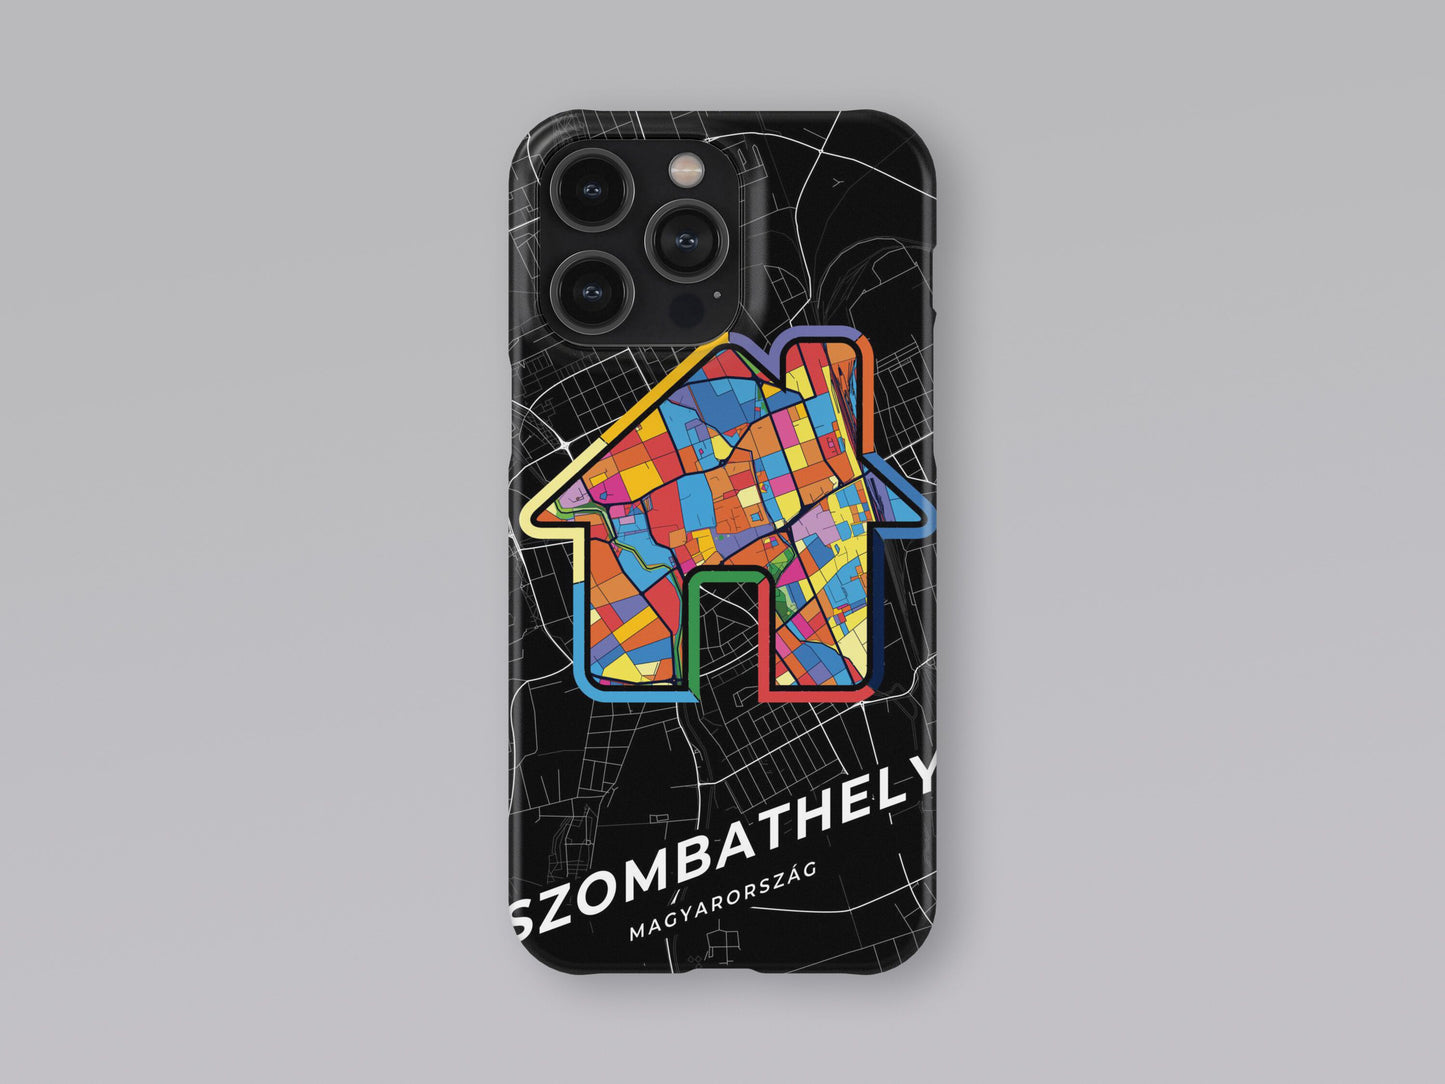 Szombathely Hungary slim phone case with colorful icon 3